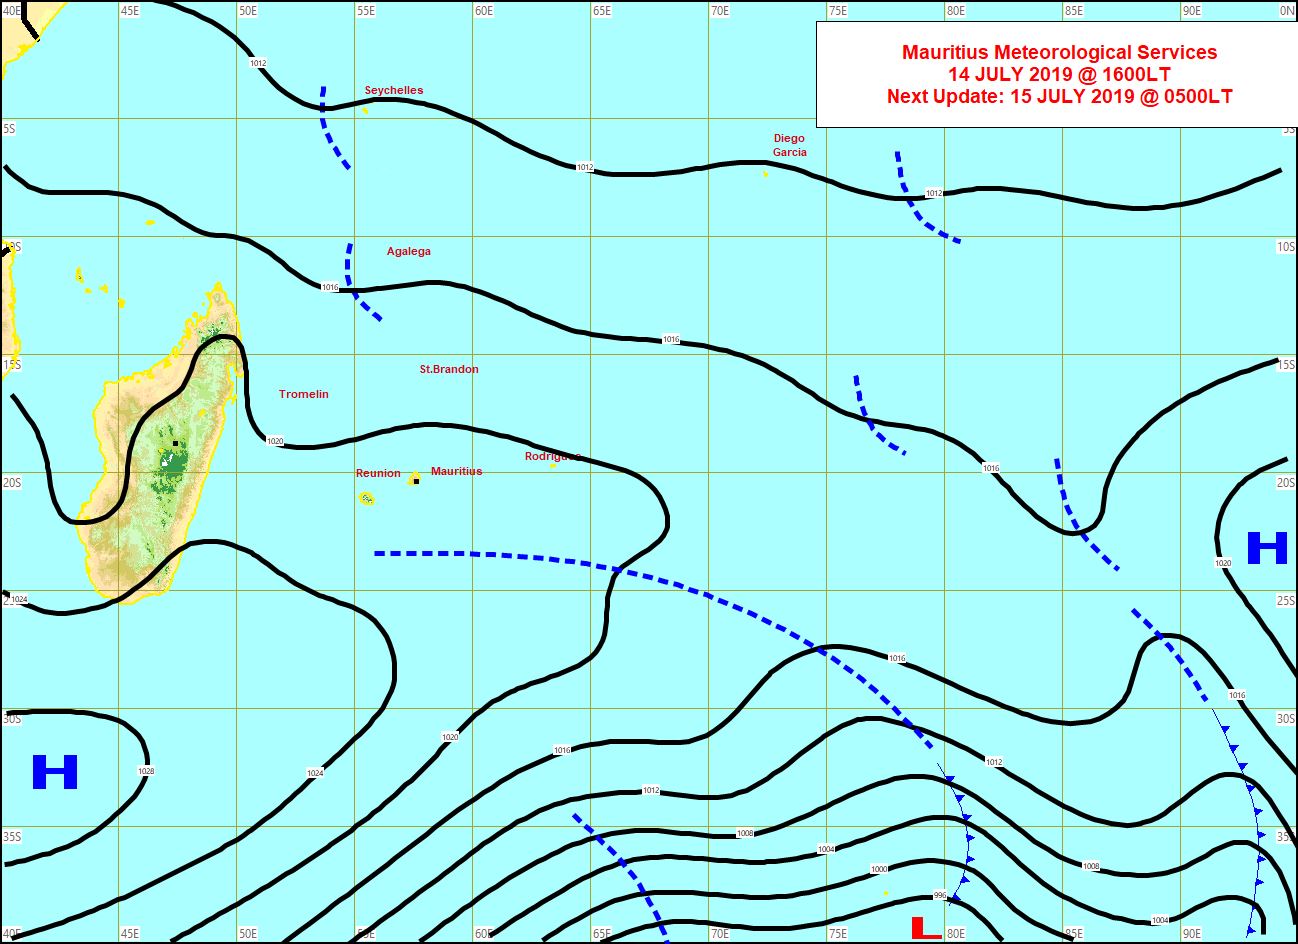 Analyse de la situation de surface cet après midi. La limite d'un système frontal s'approche par le sud des Iles Soeurs suivie par un anticyclone. MMS